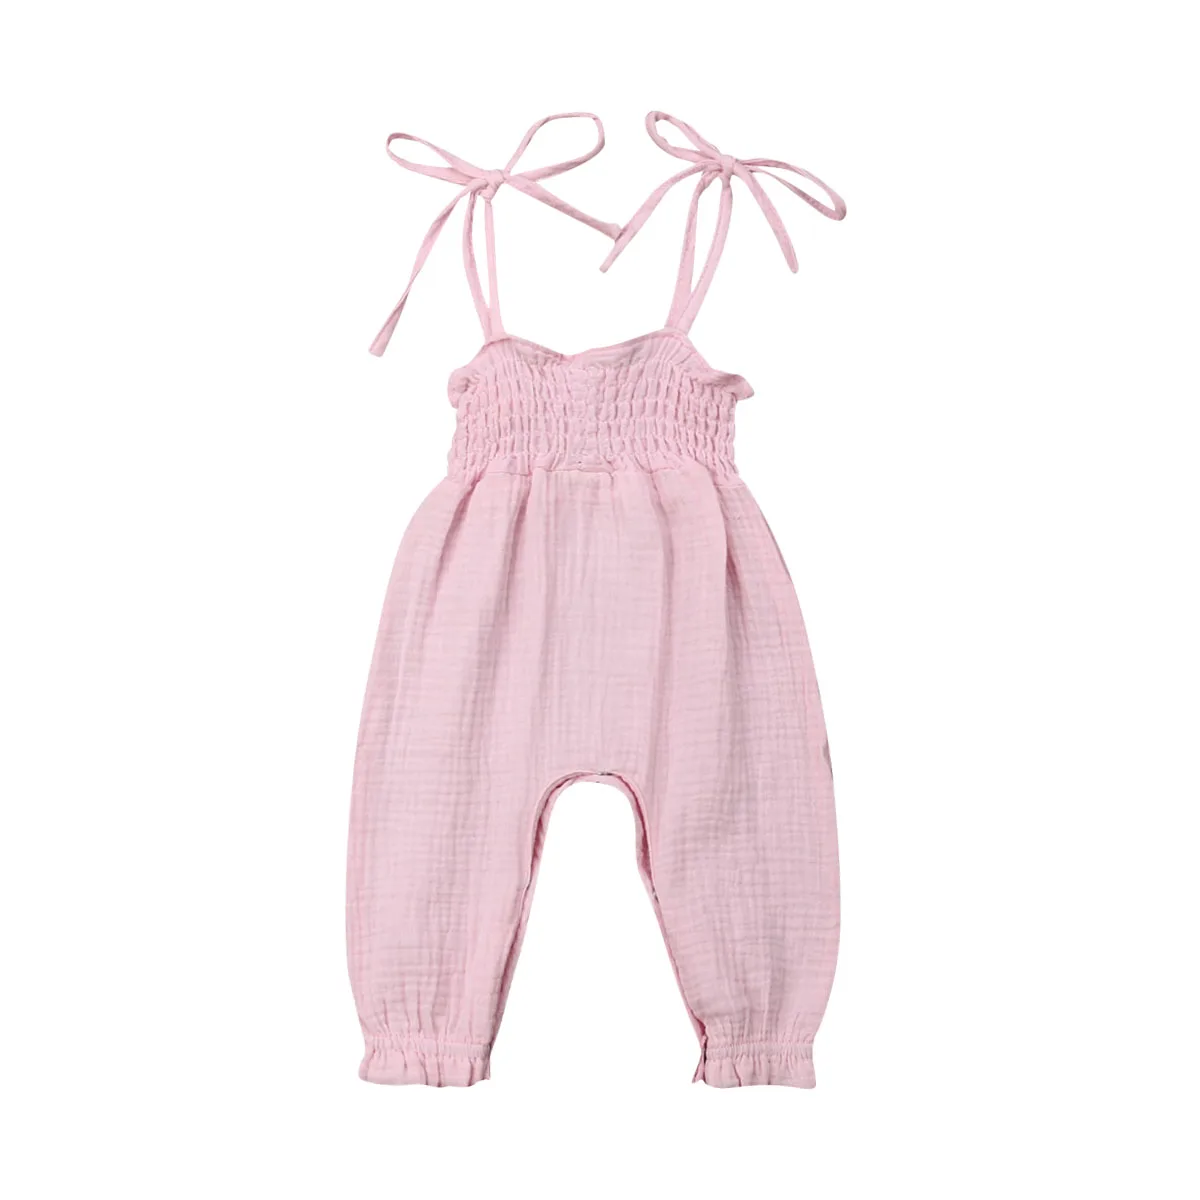 Фото 2019 летняя детская одежда для малышей платье девочек без рукавов Бандажное